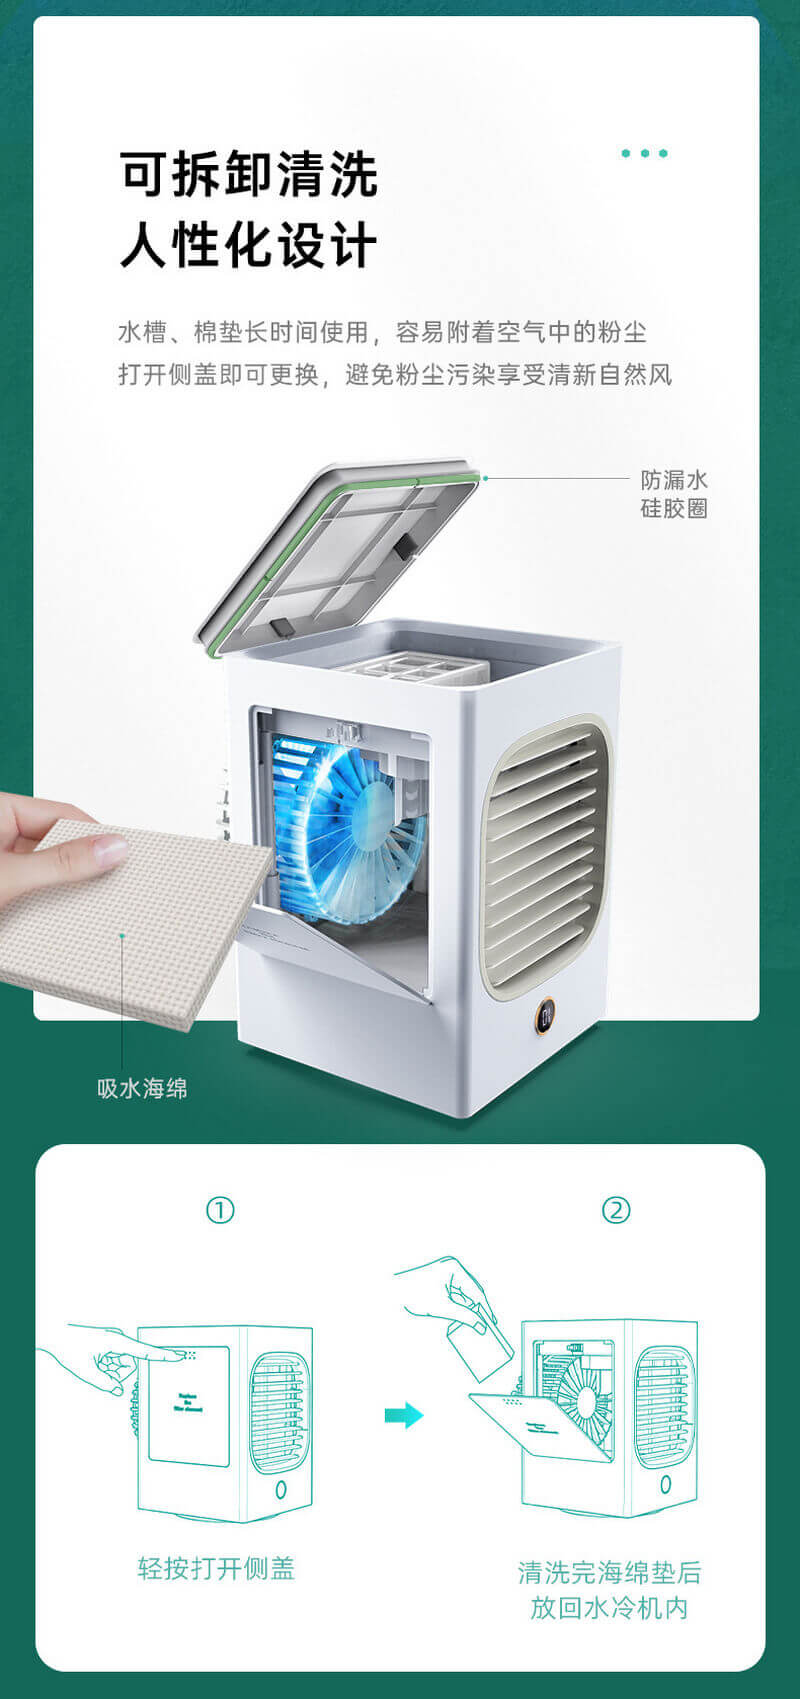 binggui novel water cooling fan usb desk mist spray fan table air cooler hydrocooling11